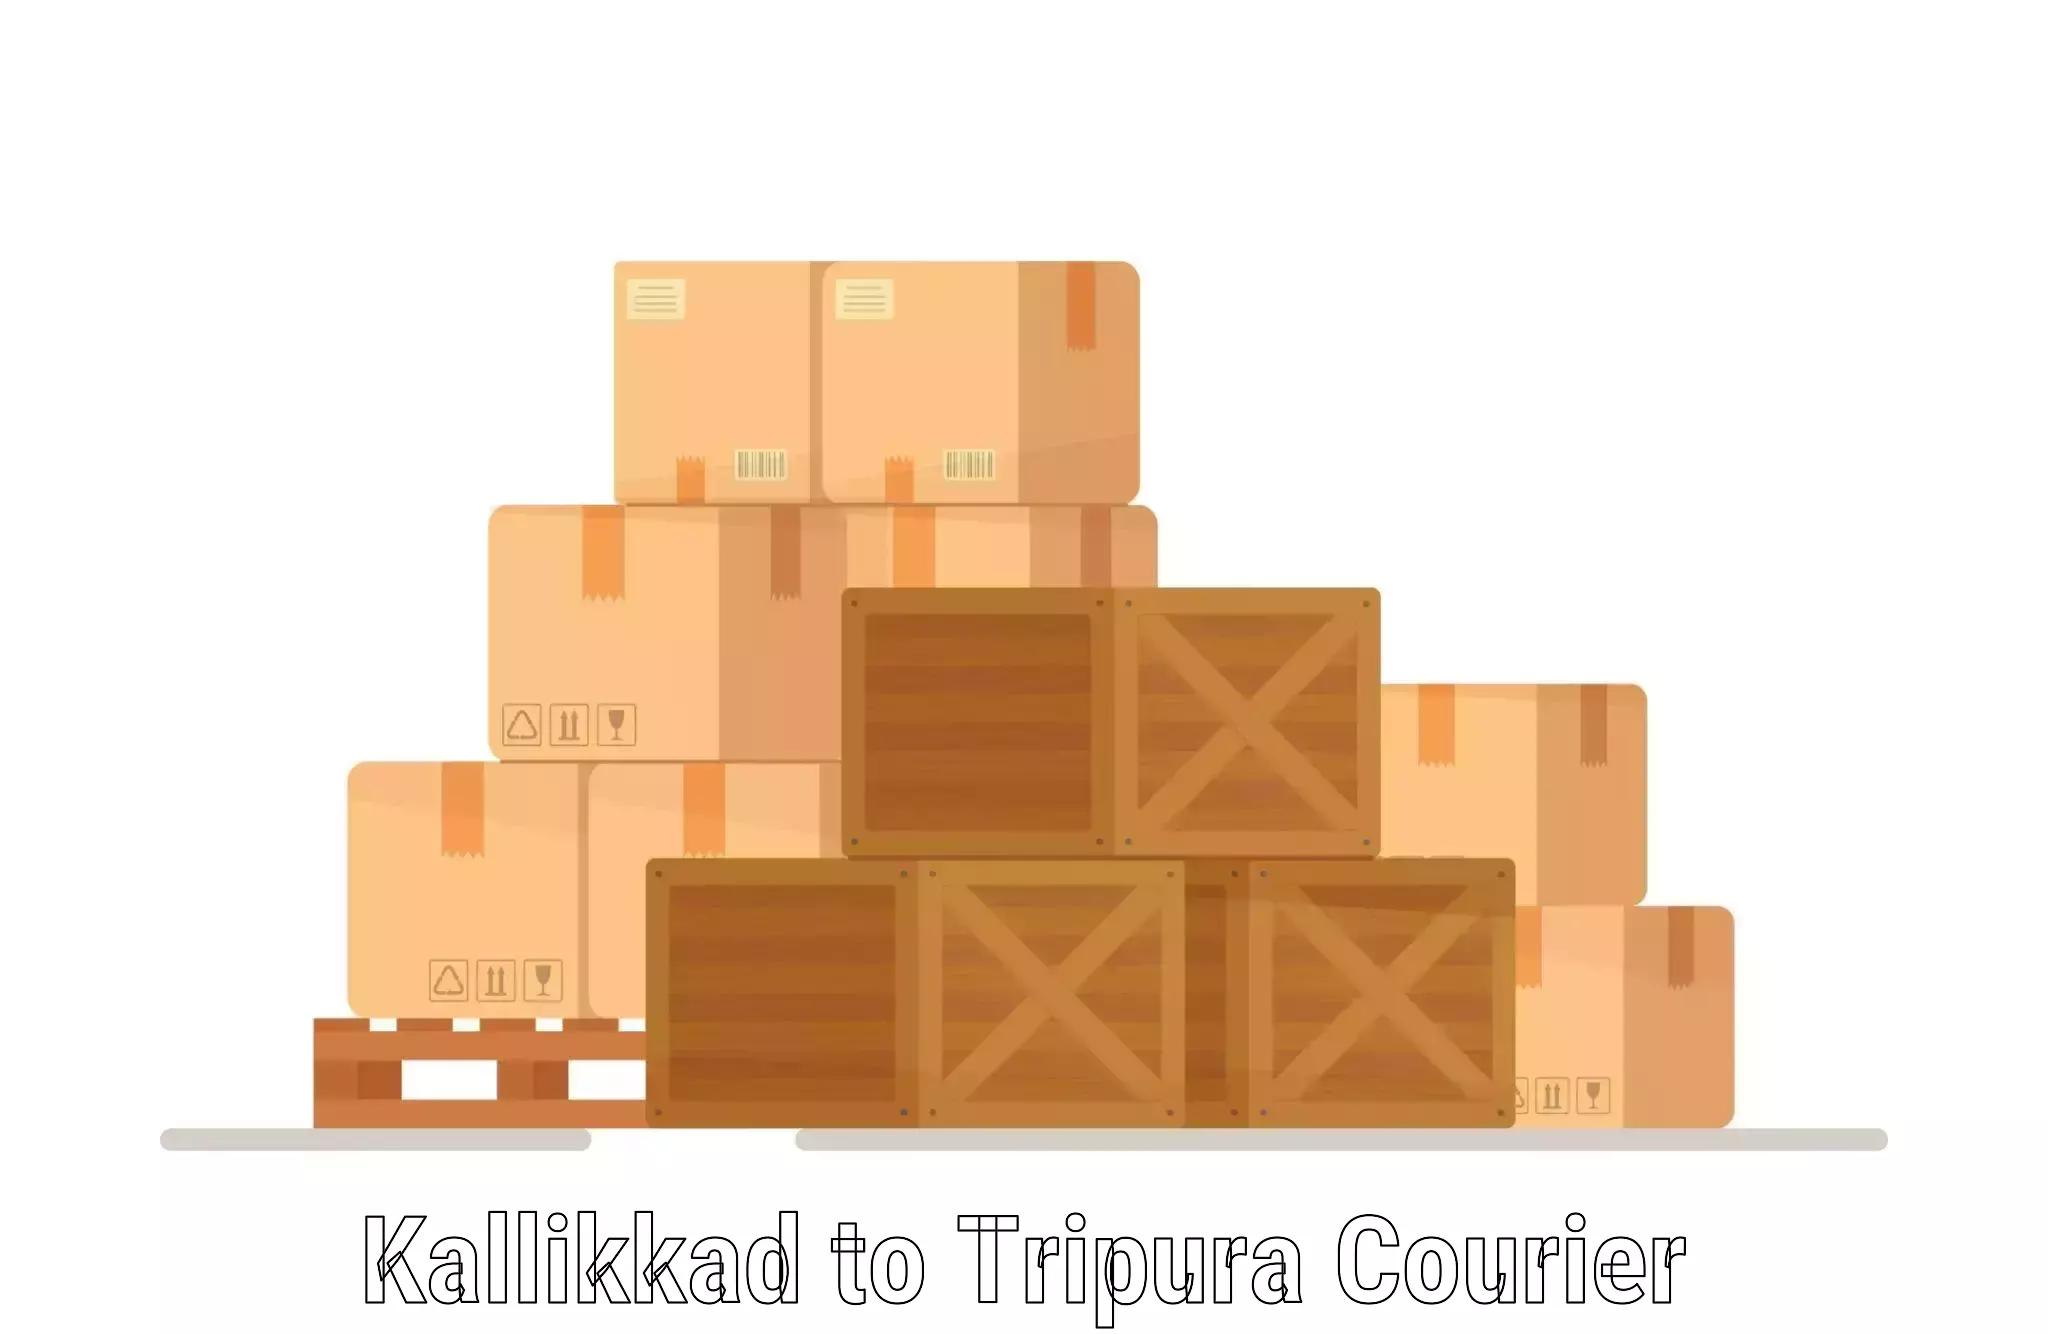 Cost-effective courier options Kallikkad to Agartala